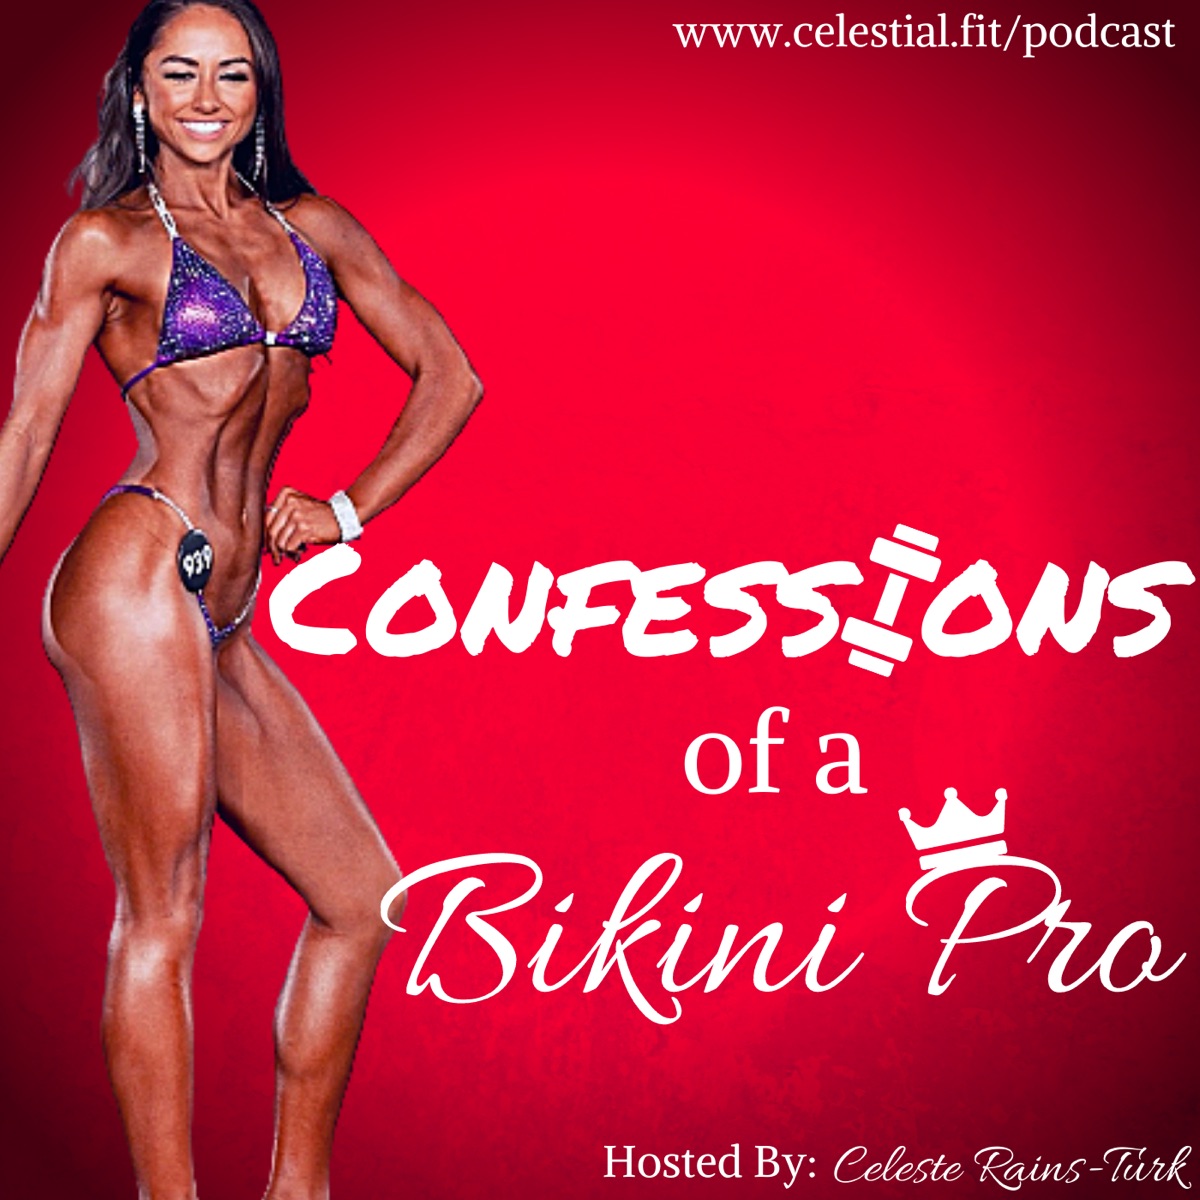 Confessions of a Bikini Pro – Podcast picture picture